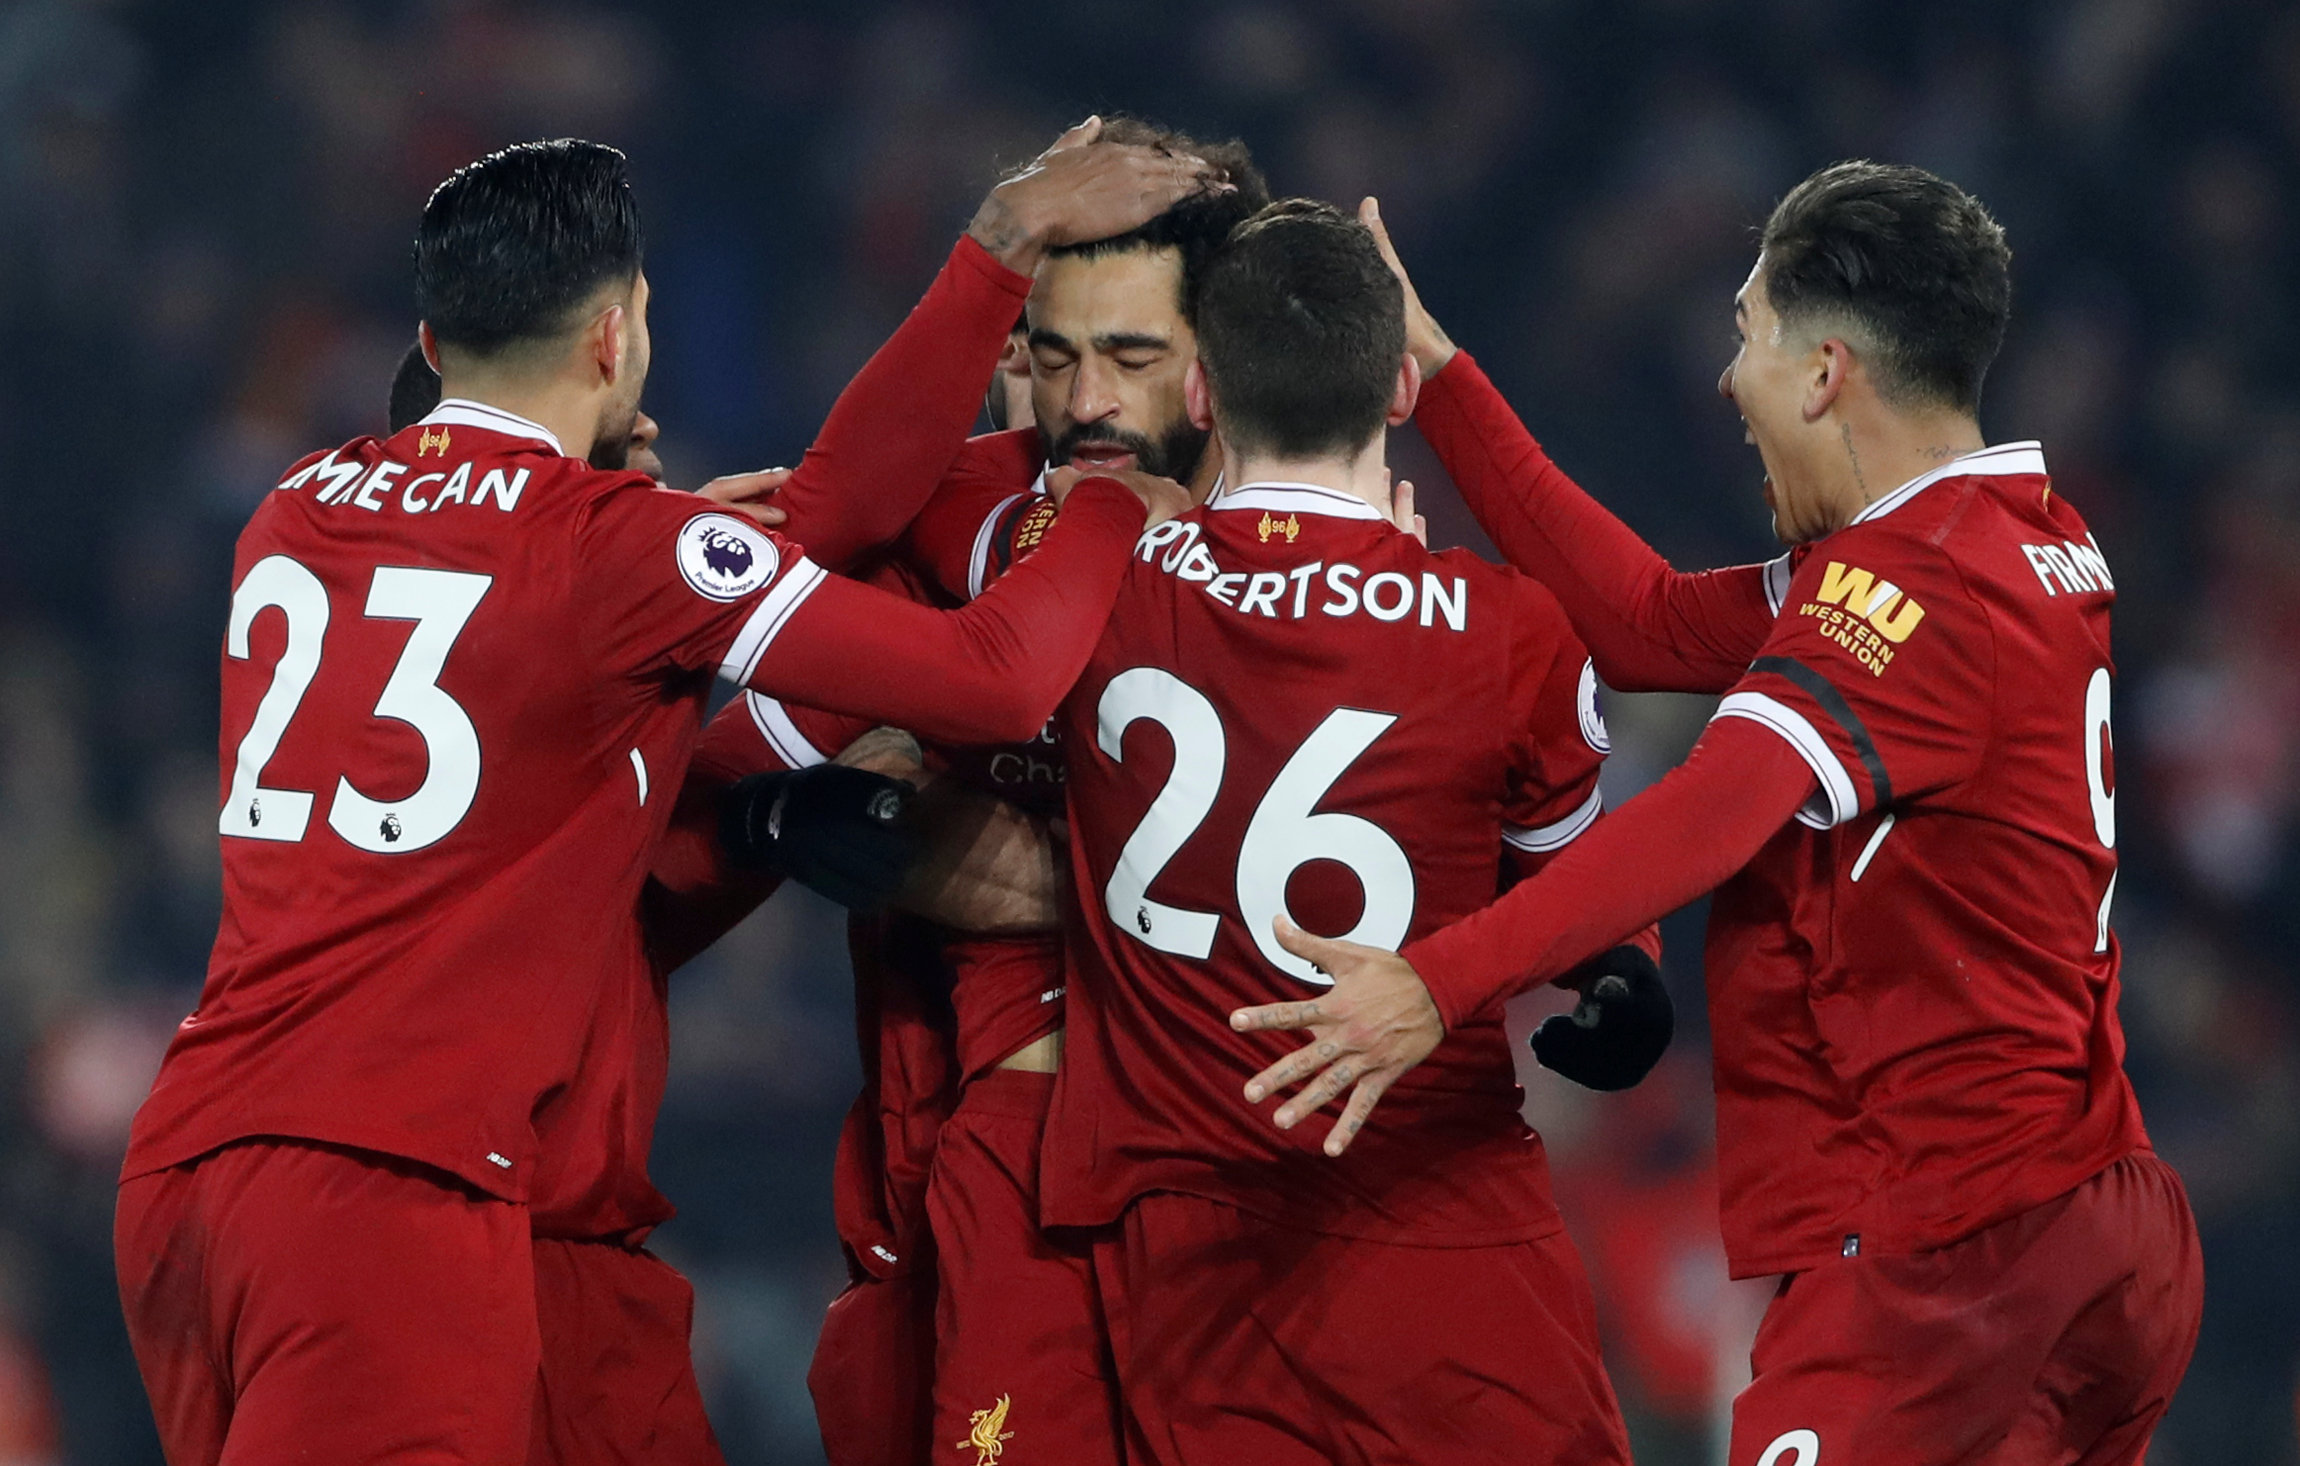 Football: Liverpool end Man City's unbeaten run in seven-goal thriller